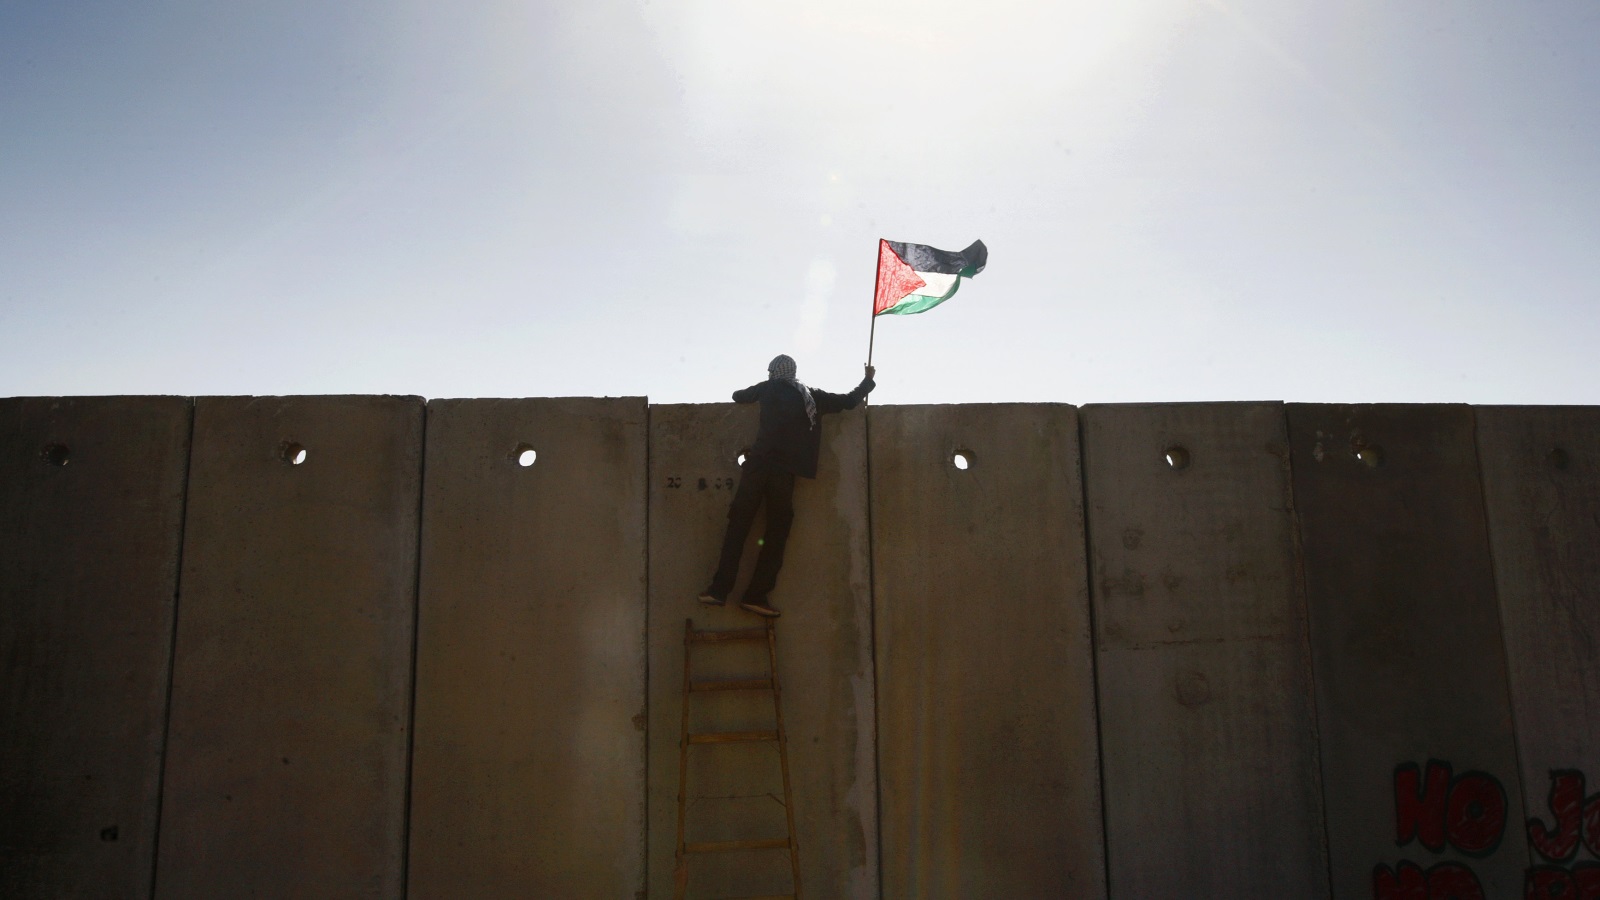 مع فقدان المزيد من الأرض الفلسطينية ودفع الفلسطينيين لغيتوهات أضيق فأضيق، ومحاصرتهم بجدار عازل، خلقت إسرائيل حقائق على الأرض تجعل الاعتراف بدولة فلسطينية مستقلة أمرا مستحيلًا.